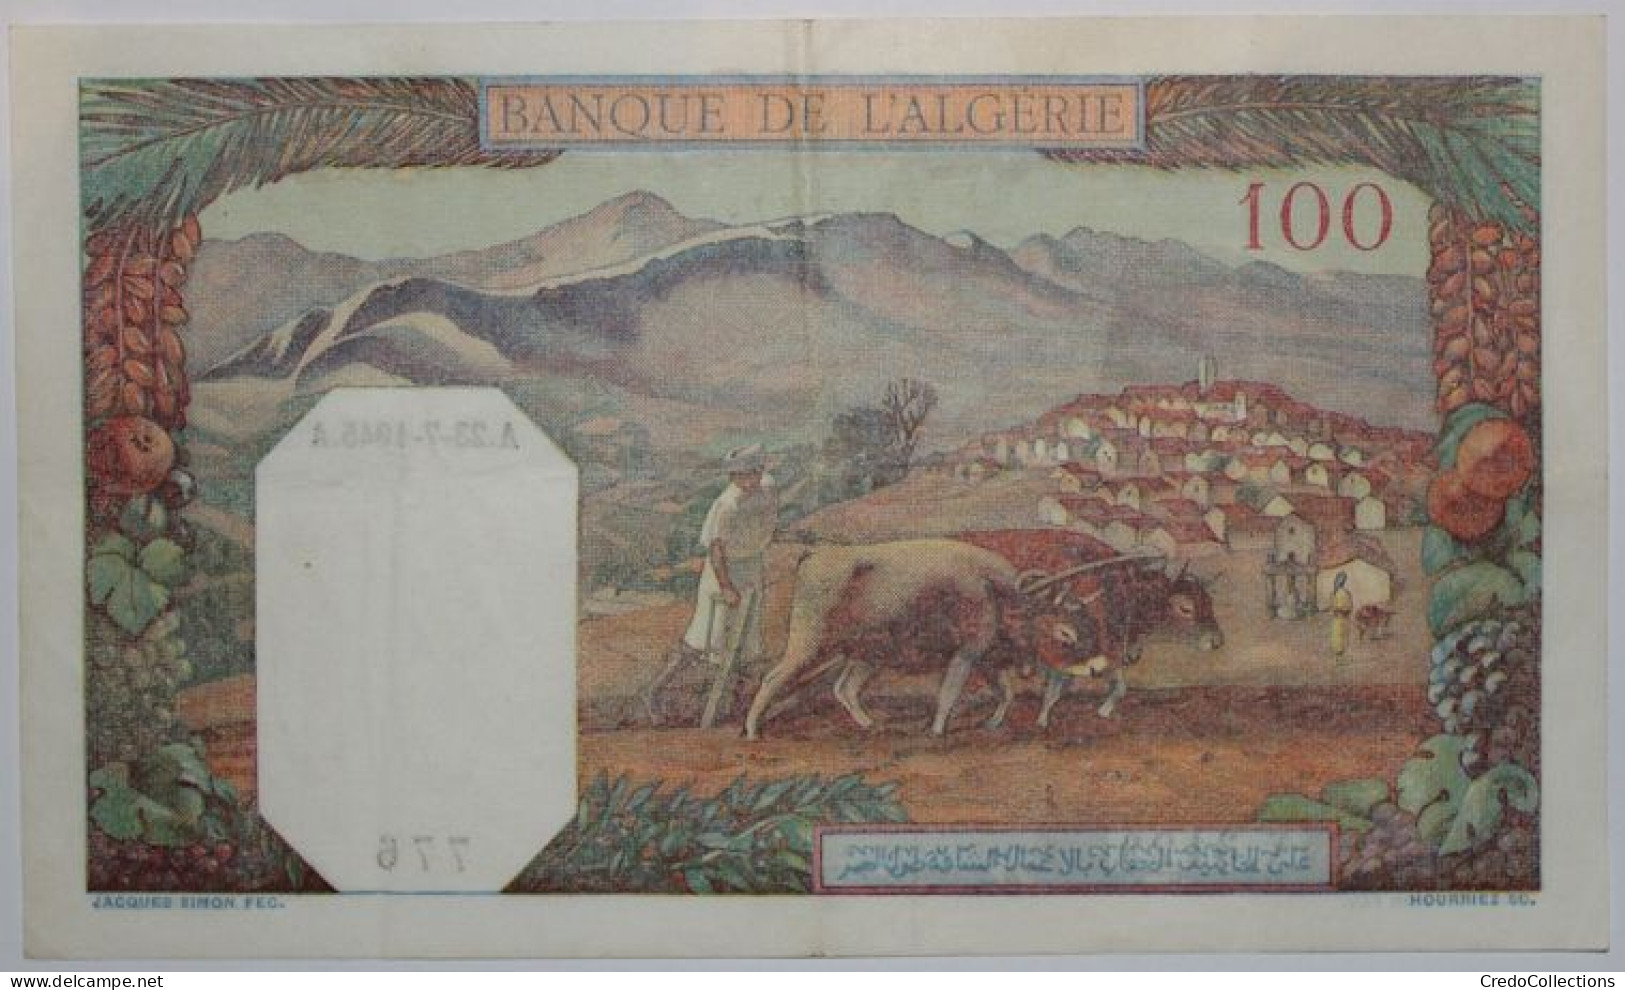 Algérie - 100 Francs - 1945 - PICK 88b.4 - TTB+ - Algeria